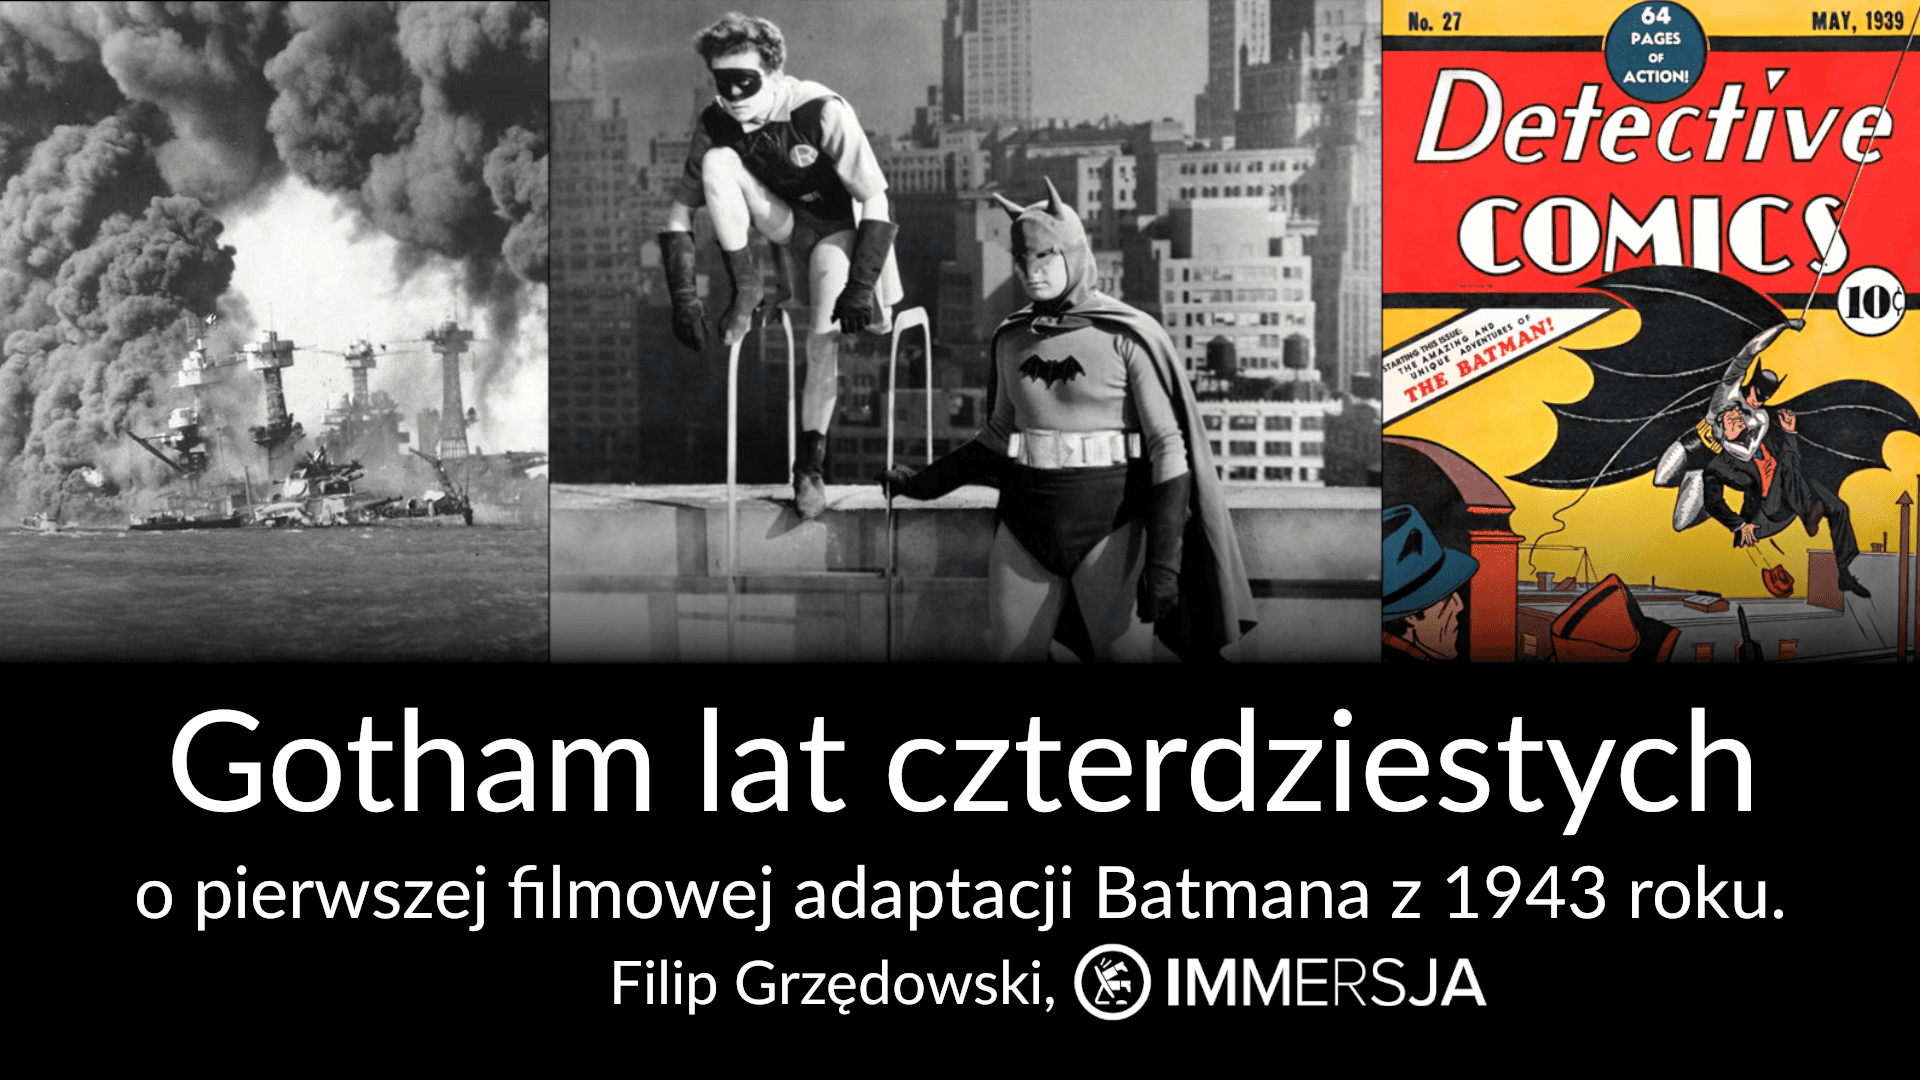 Gotham lat czterdziestych – nasza prelekcja na 34. Międzynarodowym Festiwalu Komiksu i Gier w Łodzi!